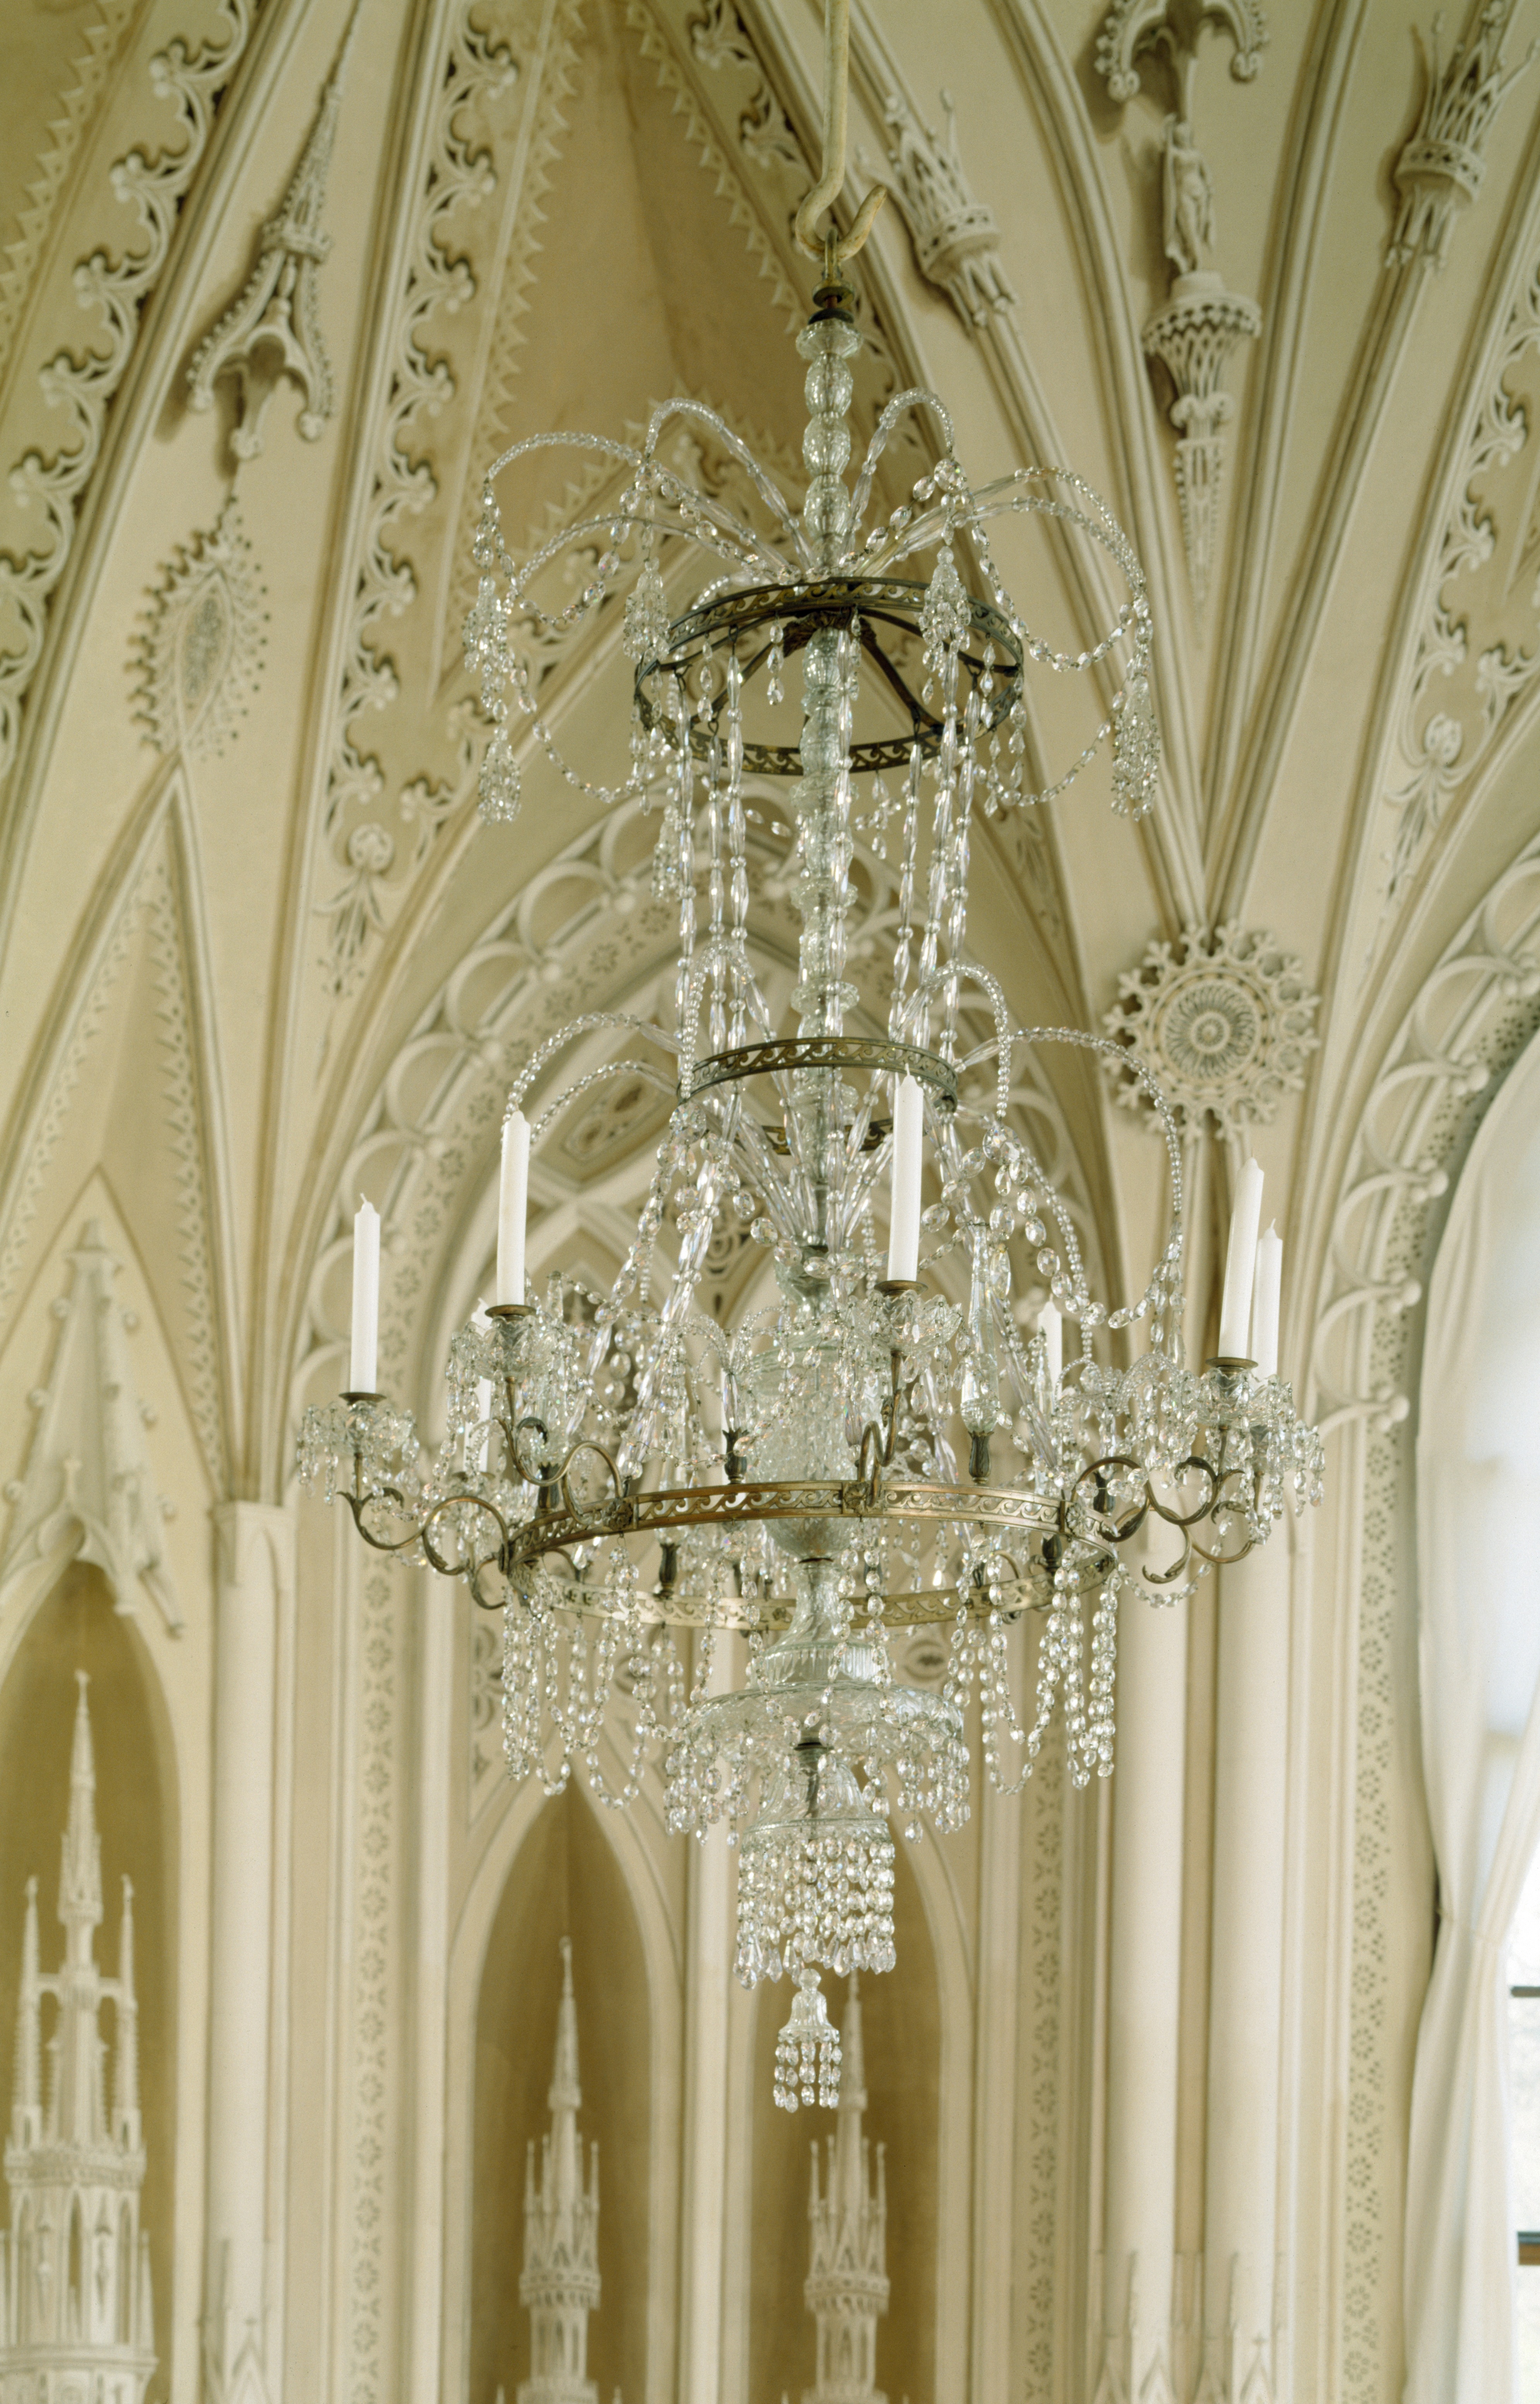 Kronleuchter mit Behang aus Glas, 8 Kerzen, VIII 1347. (Stiftung Preußische Schlösser und Gärten Berlin-Brandenburg CC BY-NC-SA)